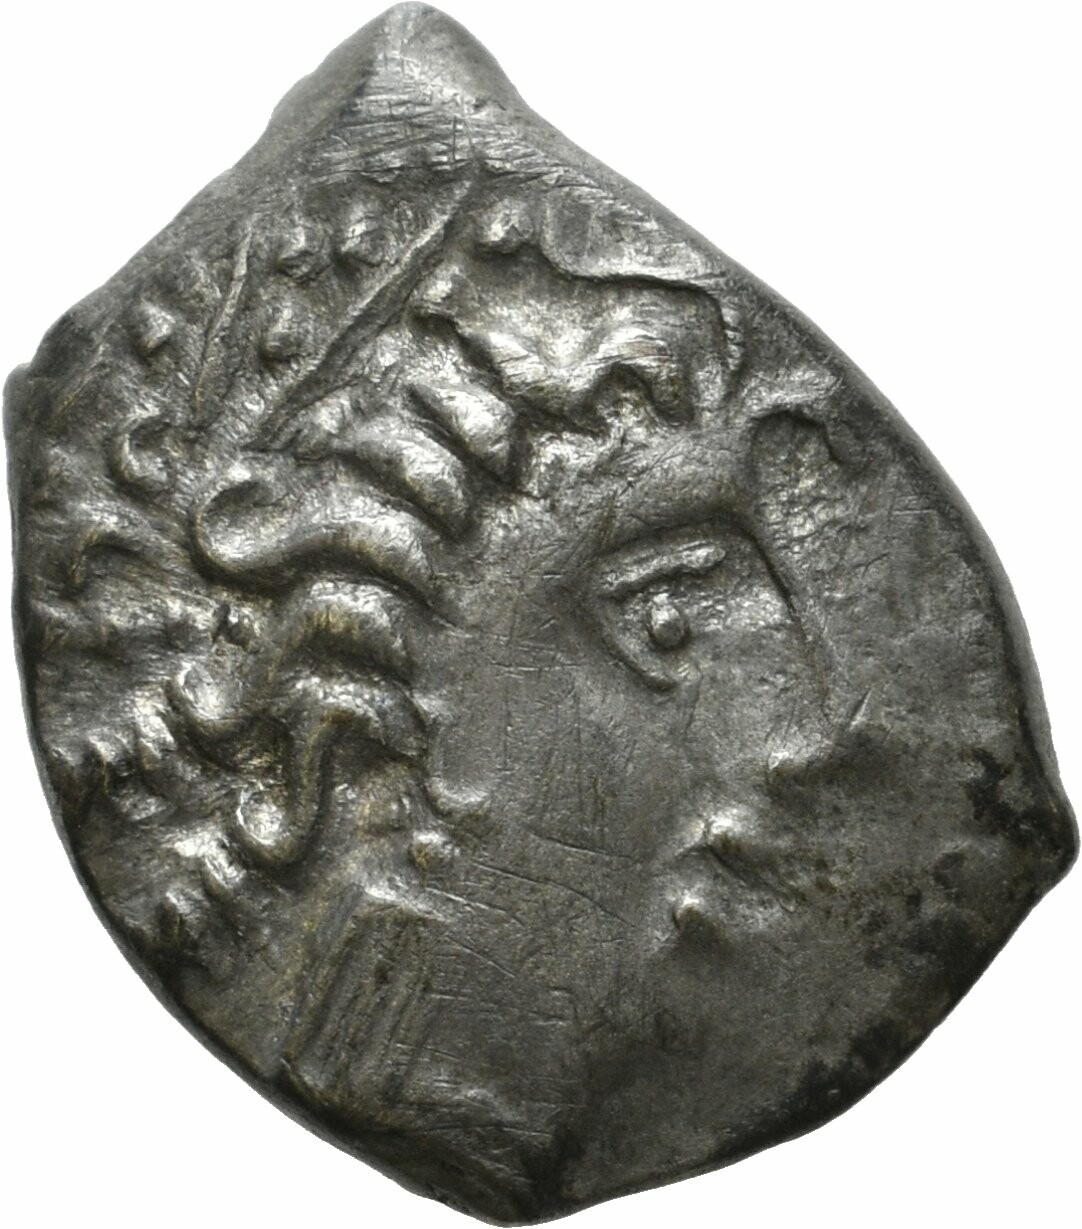 Stark stilisierte keltische Silberdrachme aus der römischen Provinz Gallia Cisalpina (Sparkassenverband Baden-Württemberg CC BY-NC-SA)